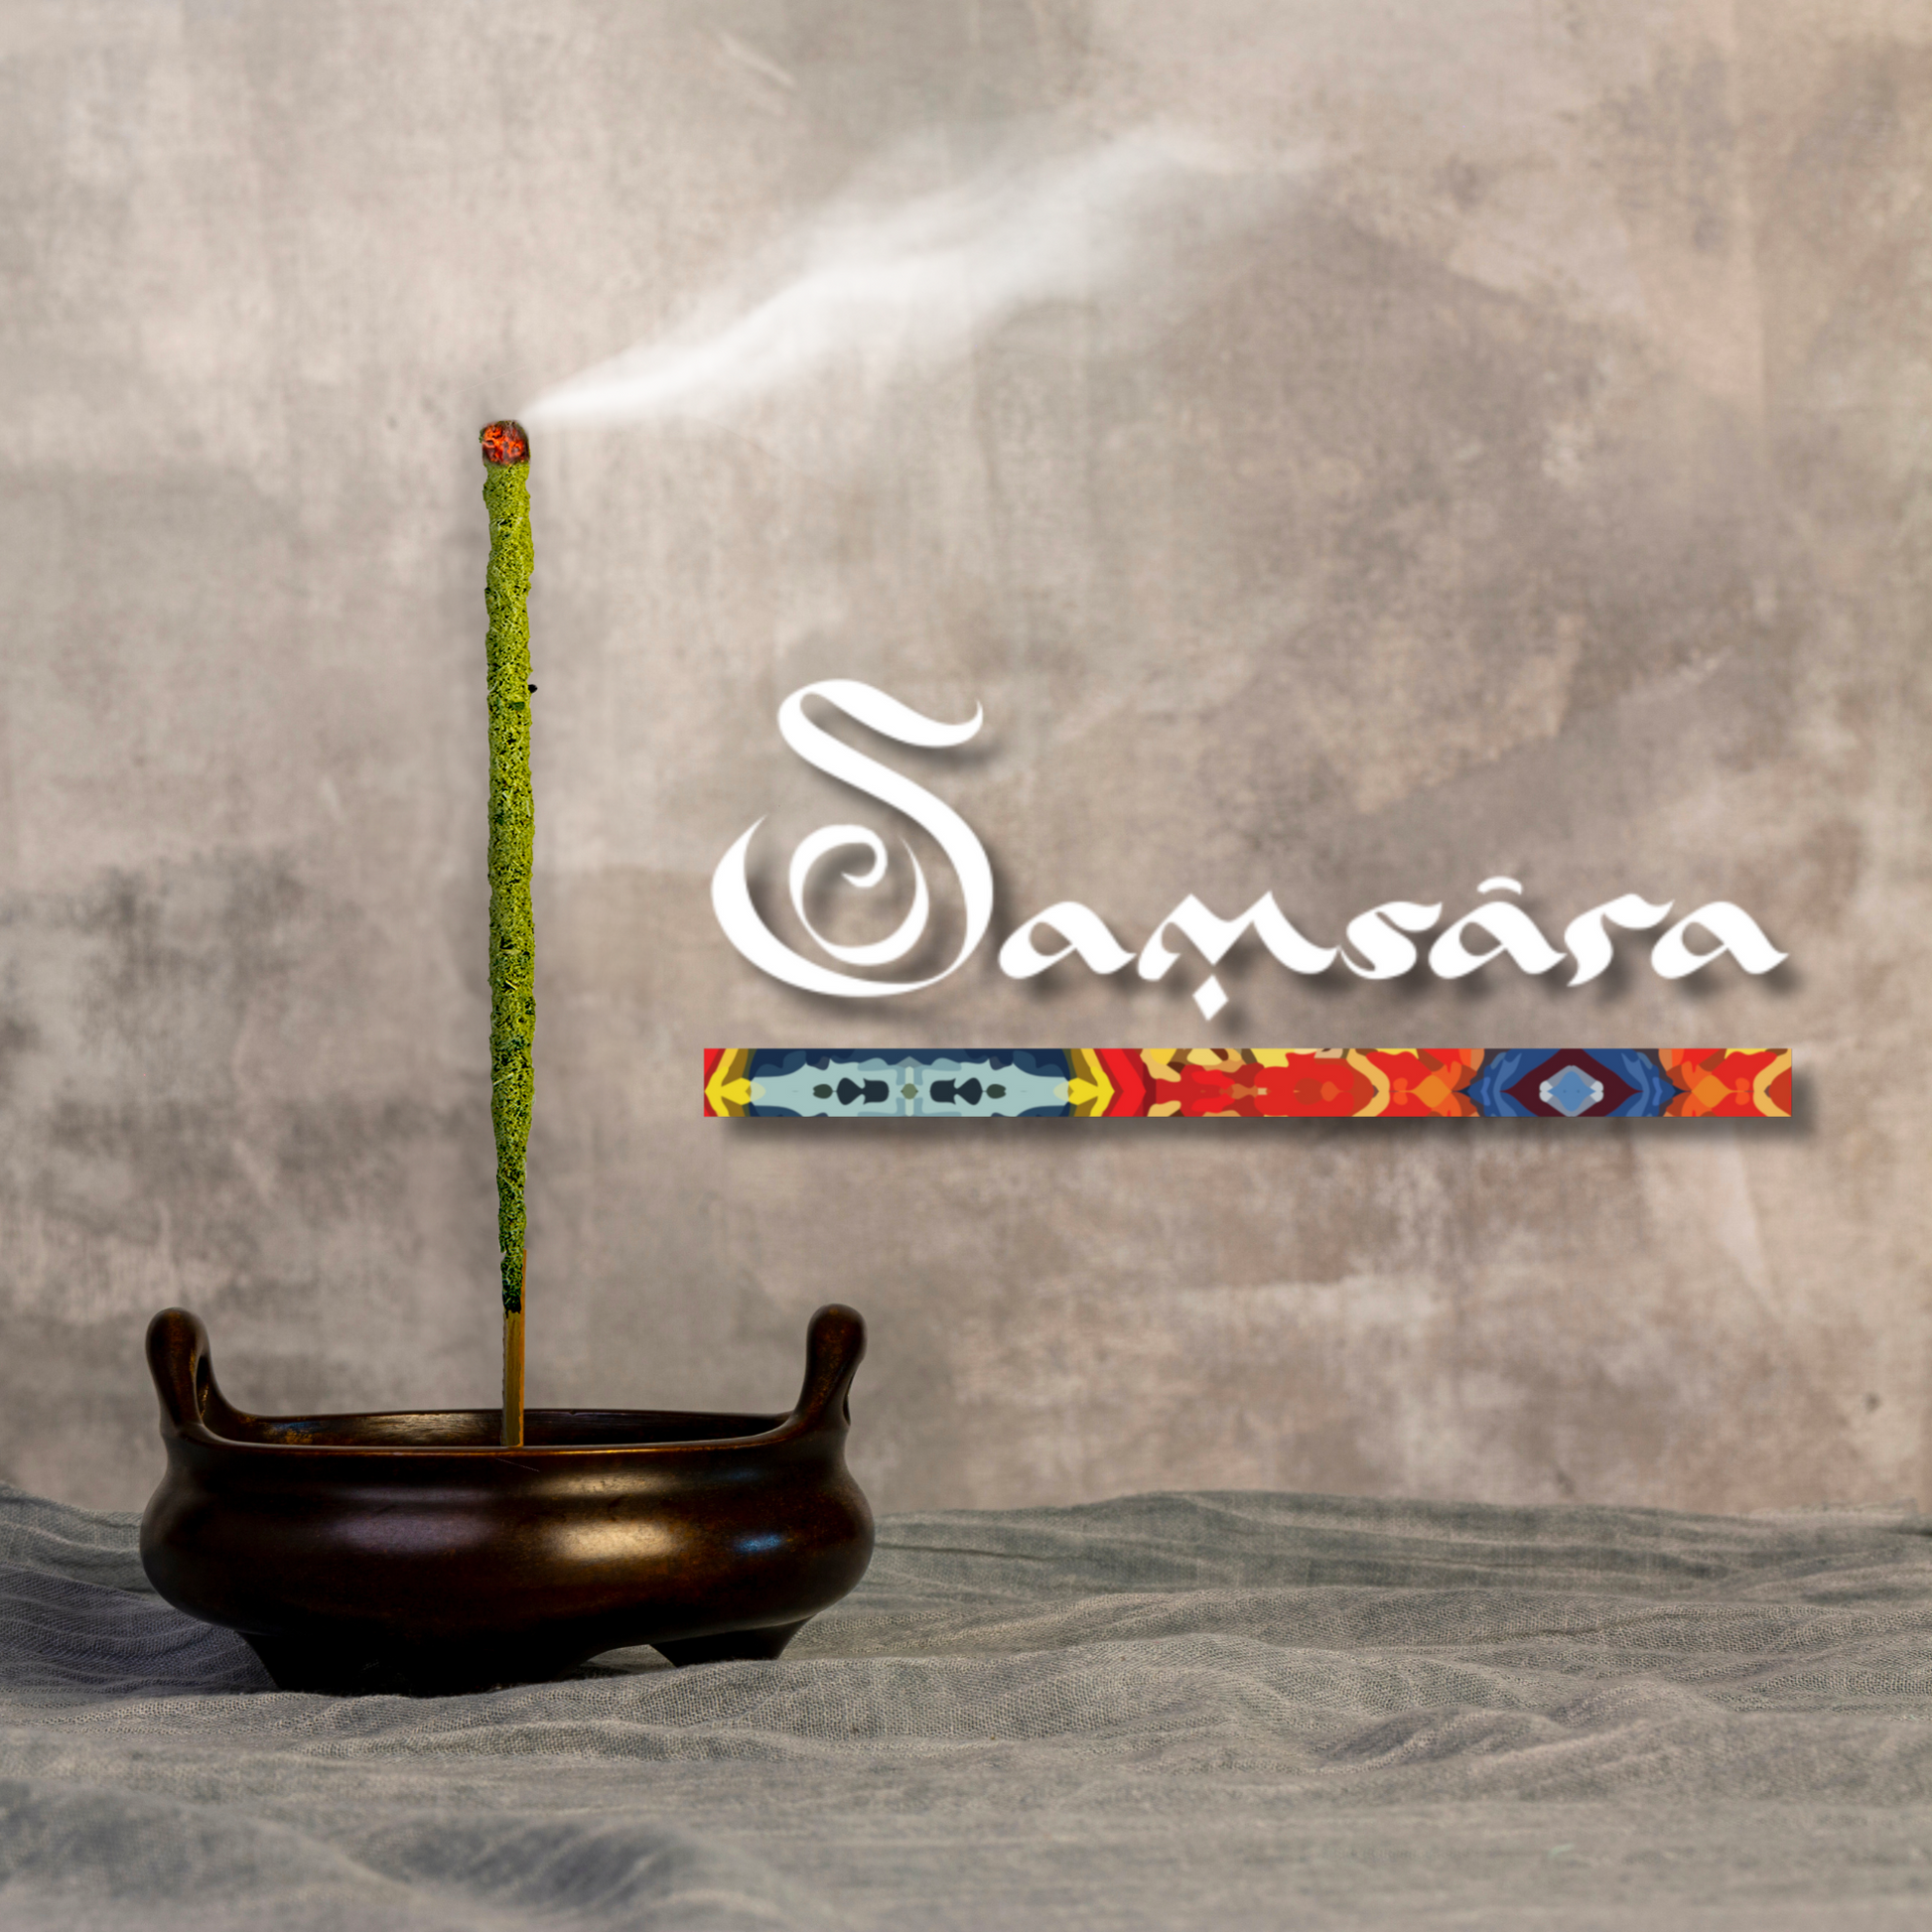 Samsara Incenso a Base di Tè Artigianale in foglie 100% Organico, rituale Cerimonia del Tè - 5 stick extra large 60 minuti ciascuno - Profumo Delicato e Persistente (MATCHA) - SamsaraFragrances